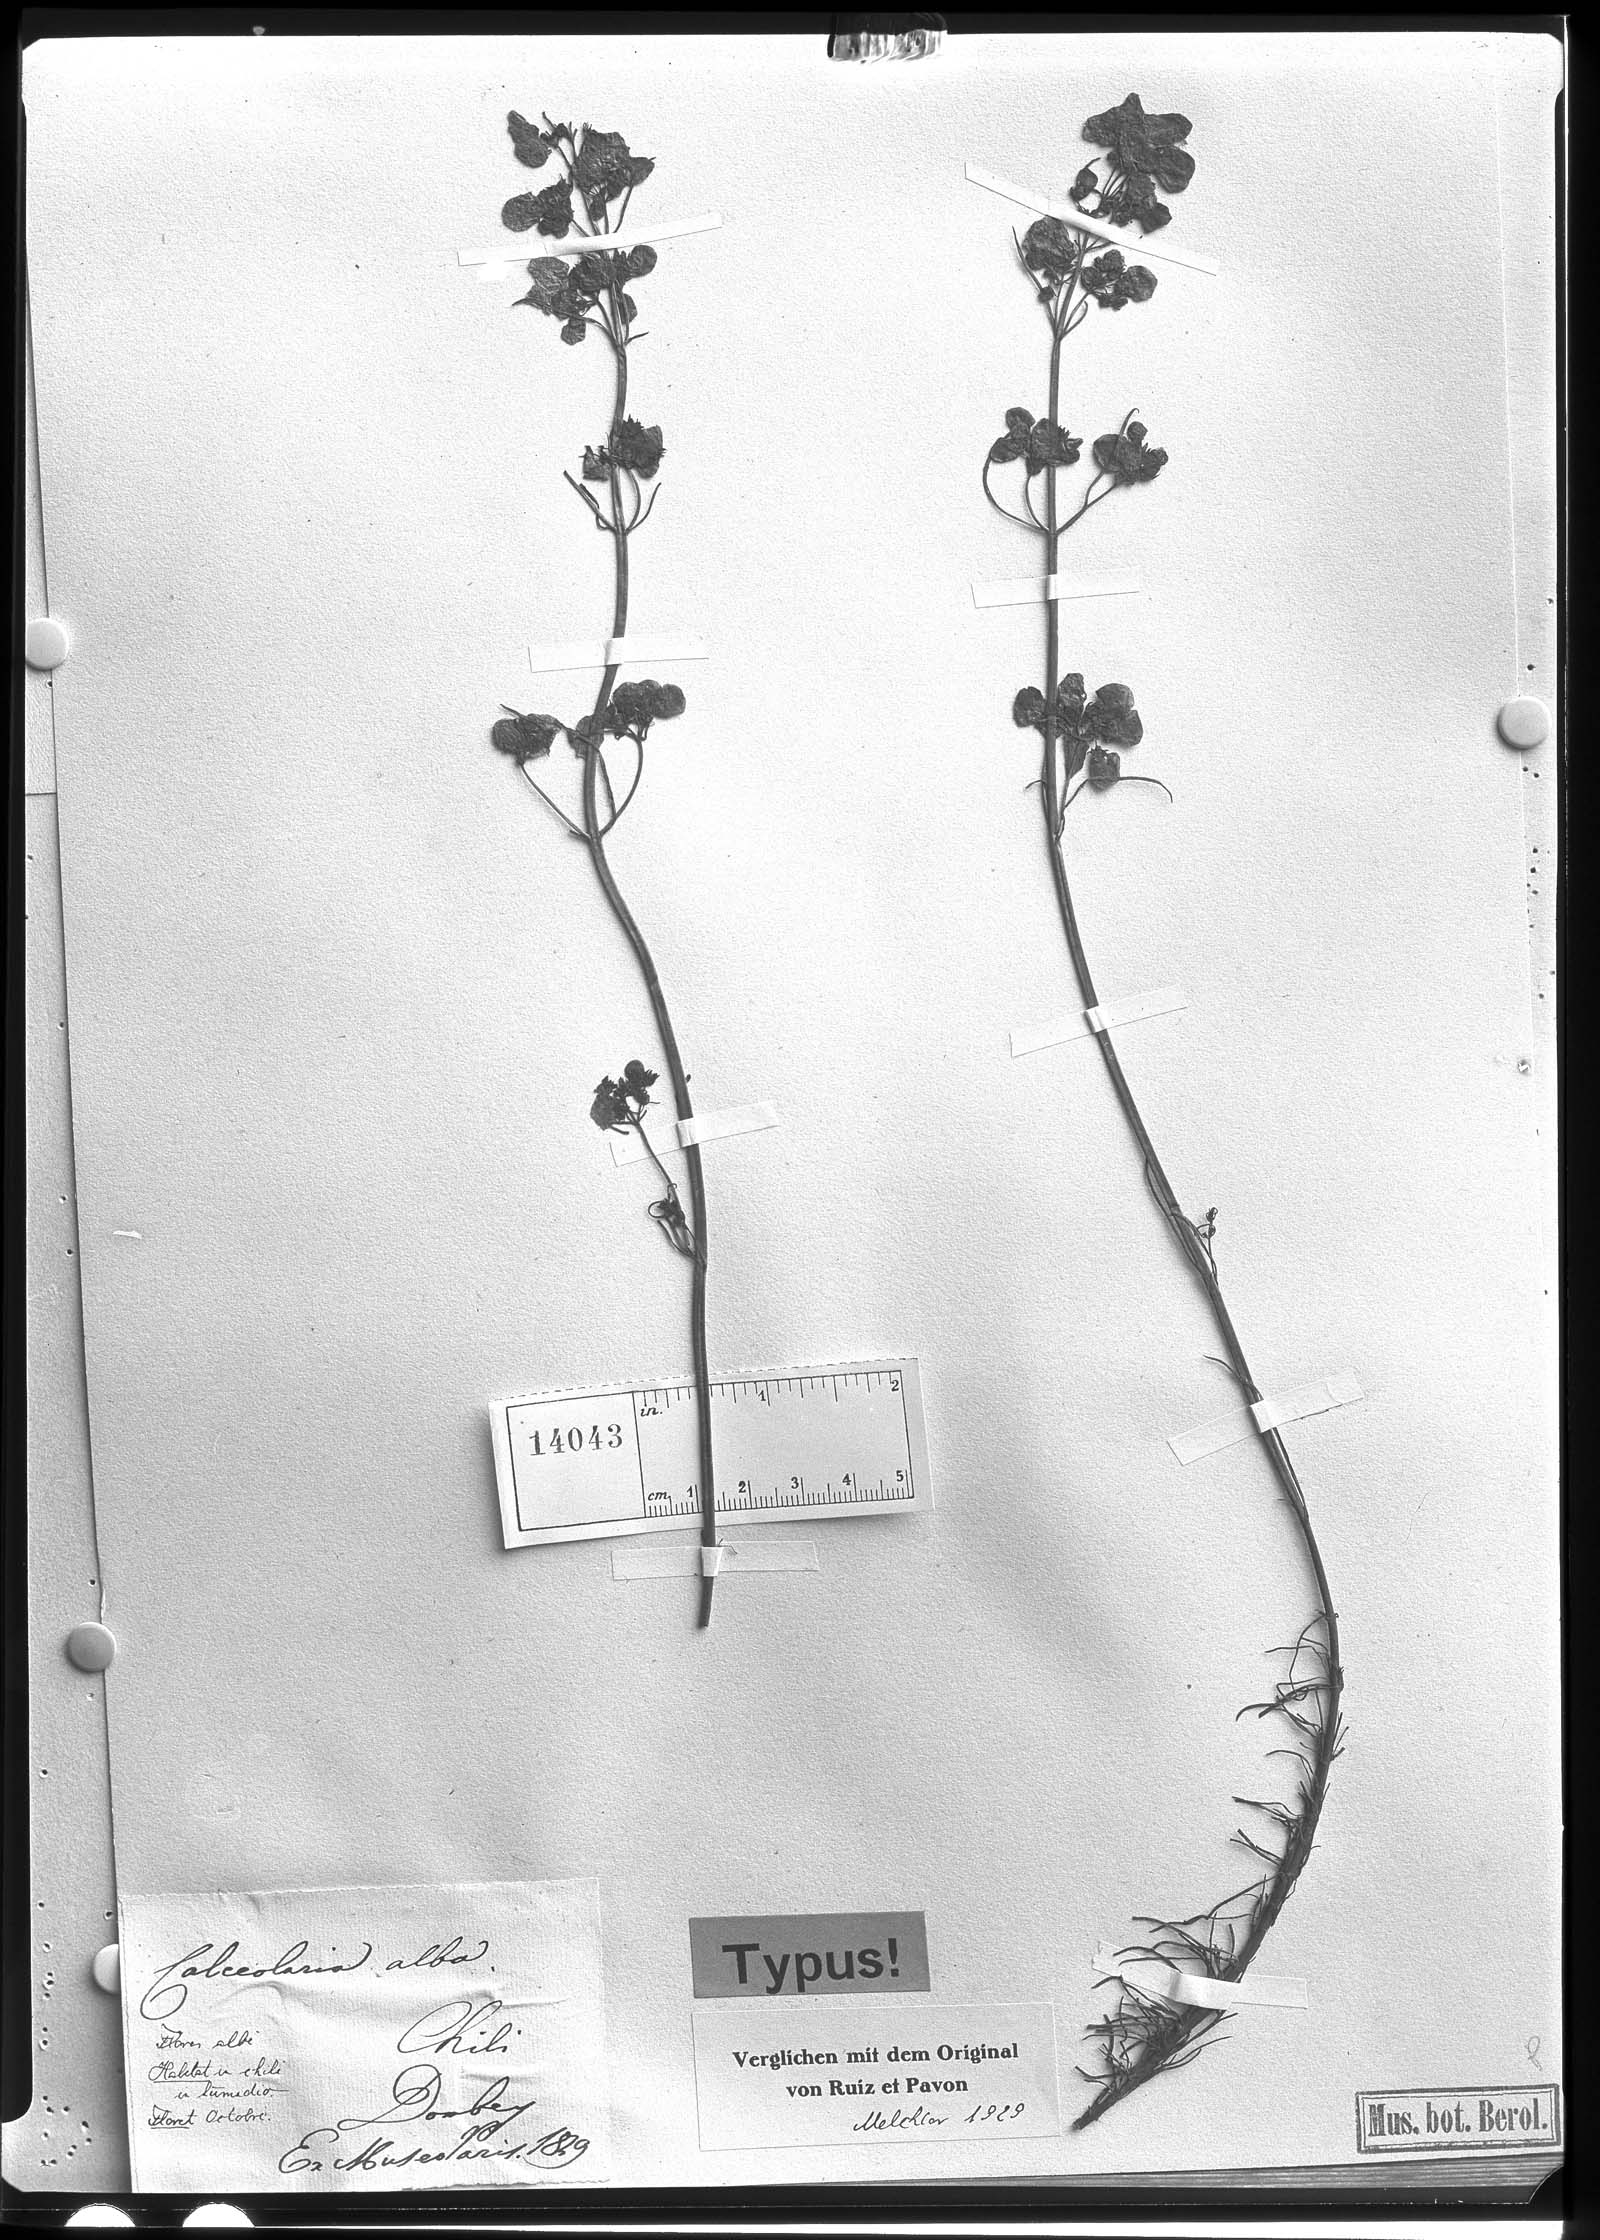 Calceolaria alba image